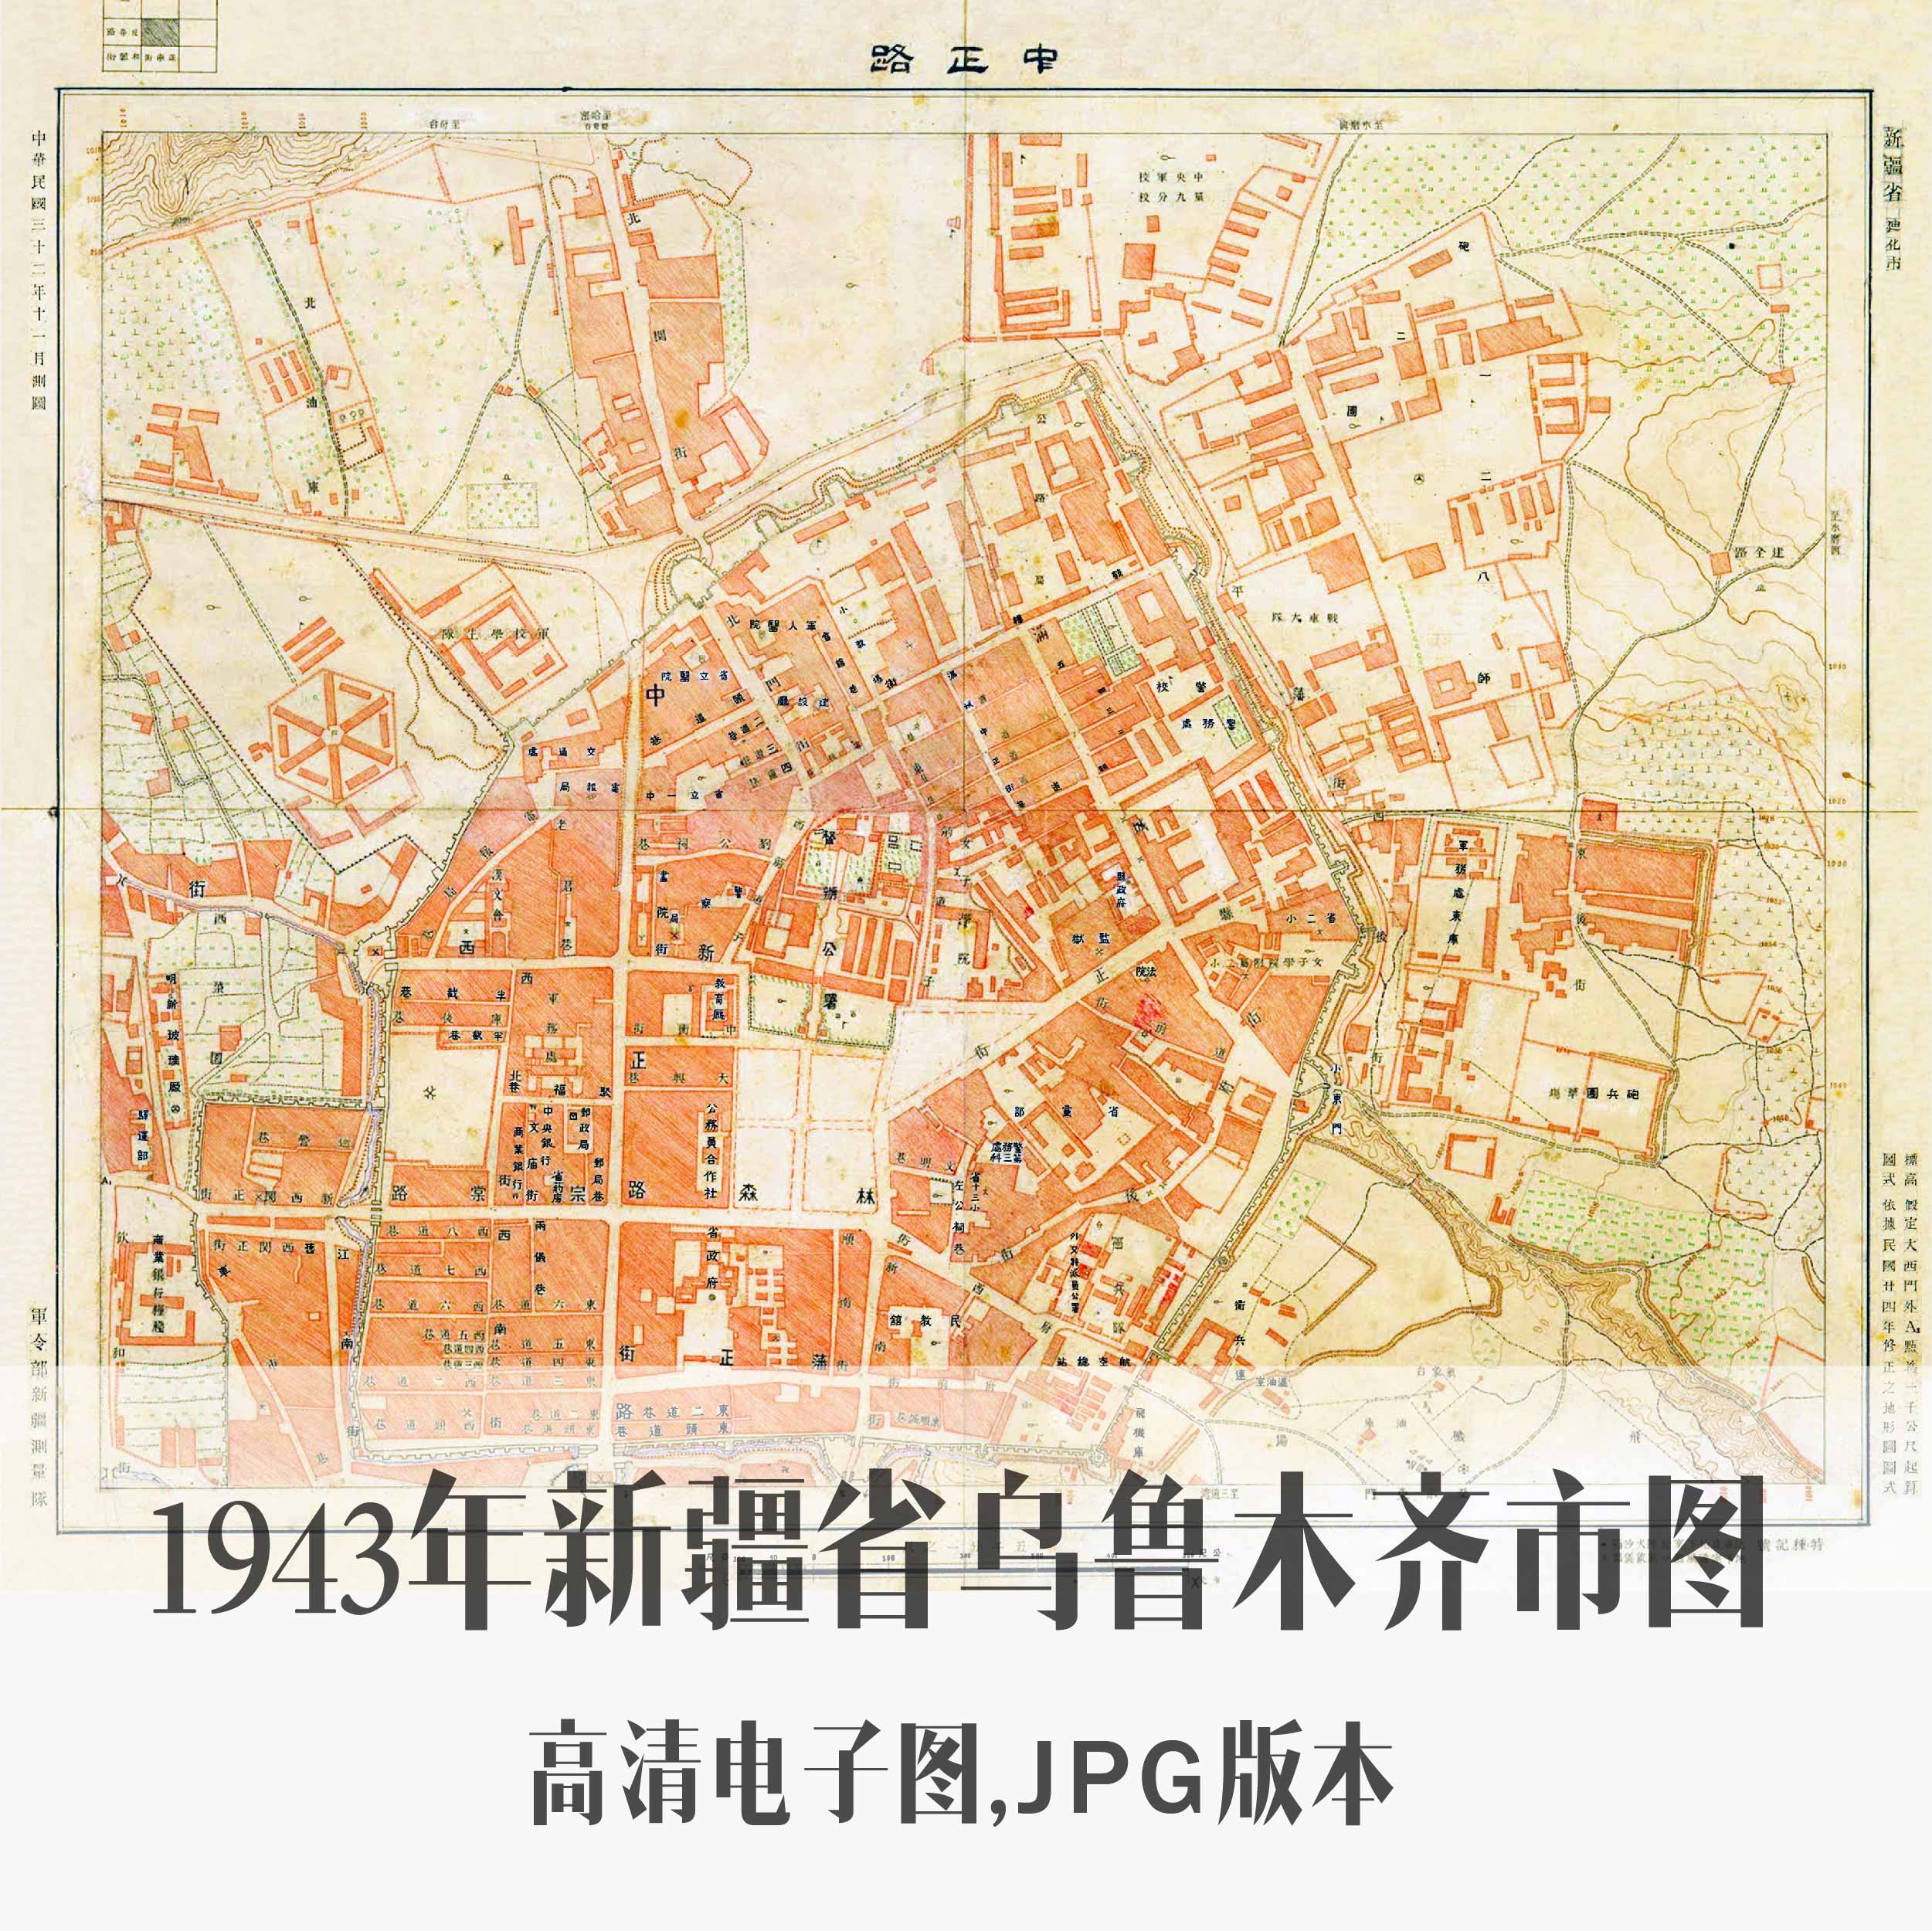 1943年新疆省乌鲁木齐市图民国新疆迪化电子老地图历史地理资料素